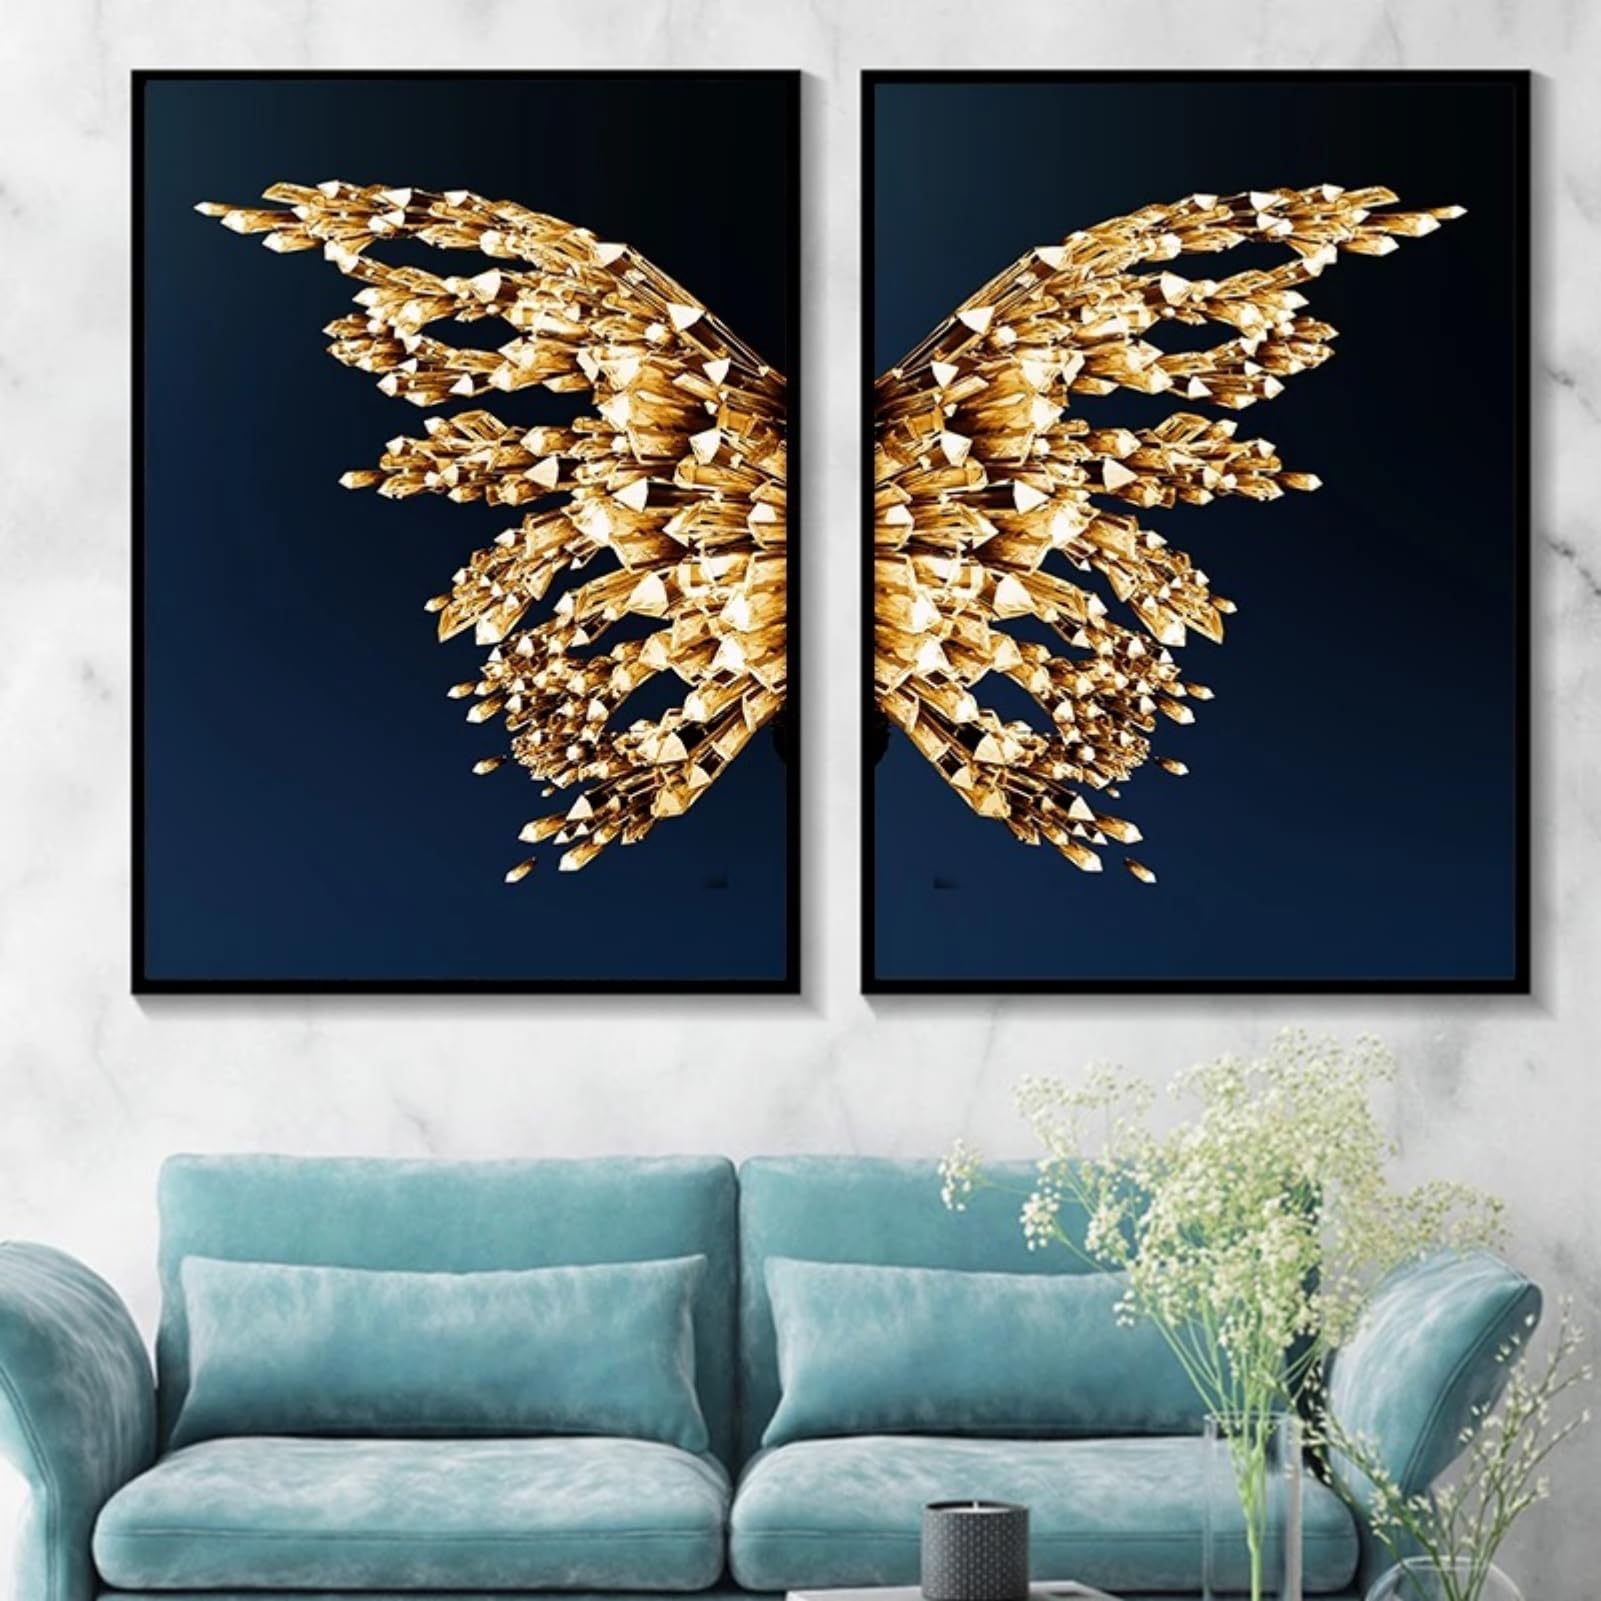 EXQUILEG 2er Goldener Schmetterling Poster Set, Moderne Goldener Schmetterling Wanddekoration Minimalistische Stil Leinwand Wandkunst Bilder Ohne Rahmen (50 * 70cm)